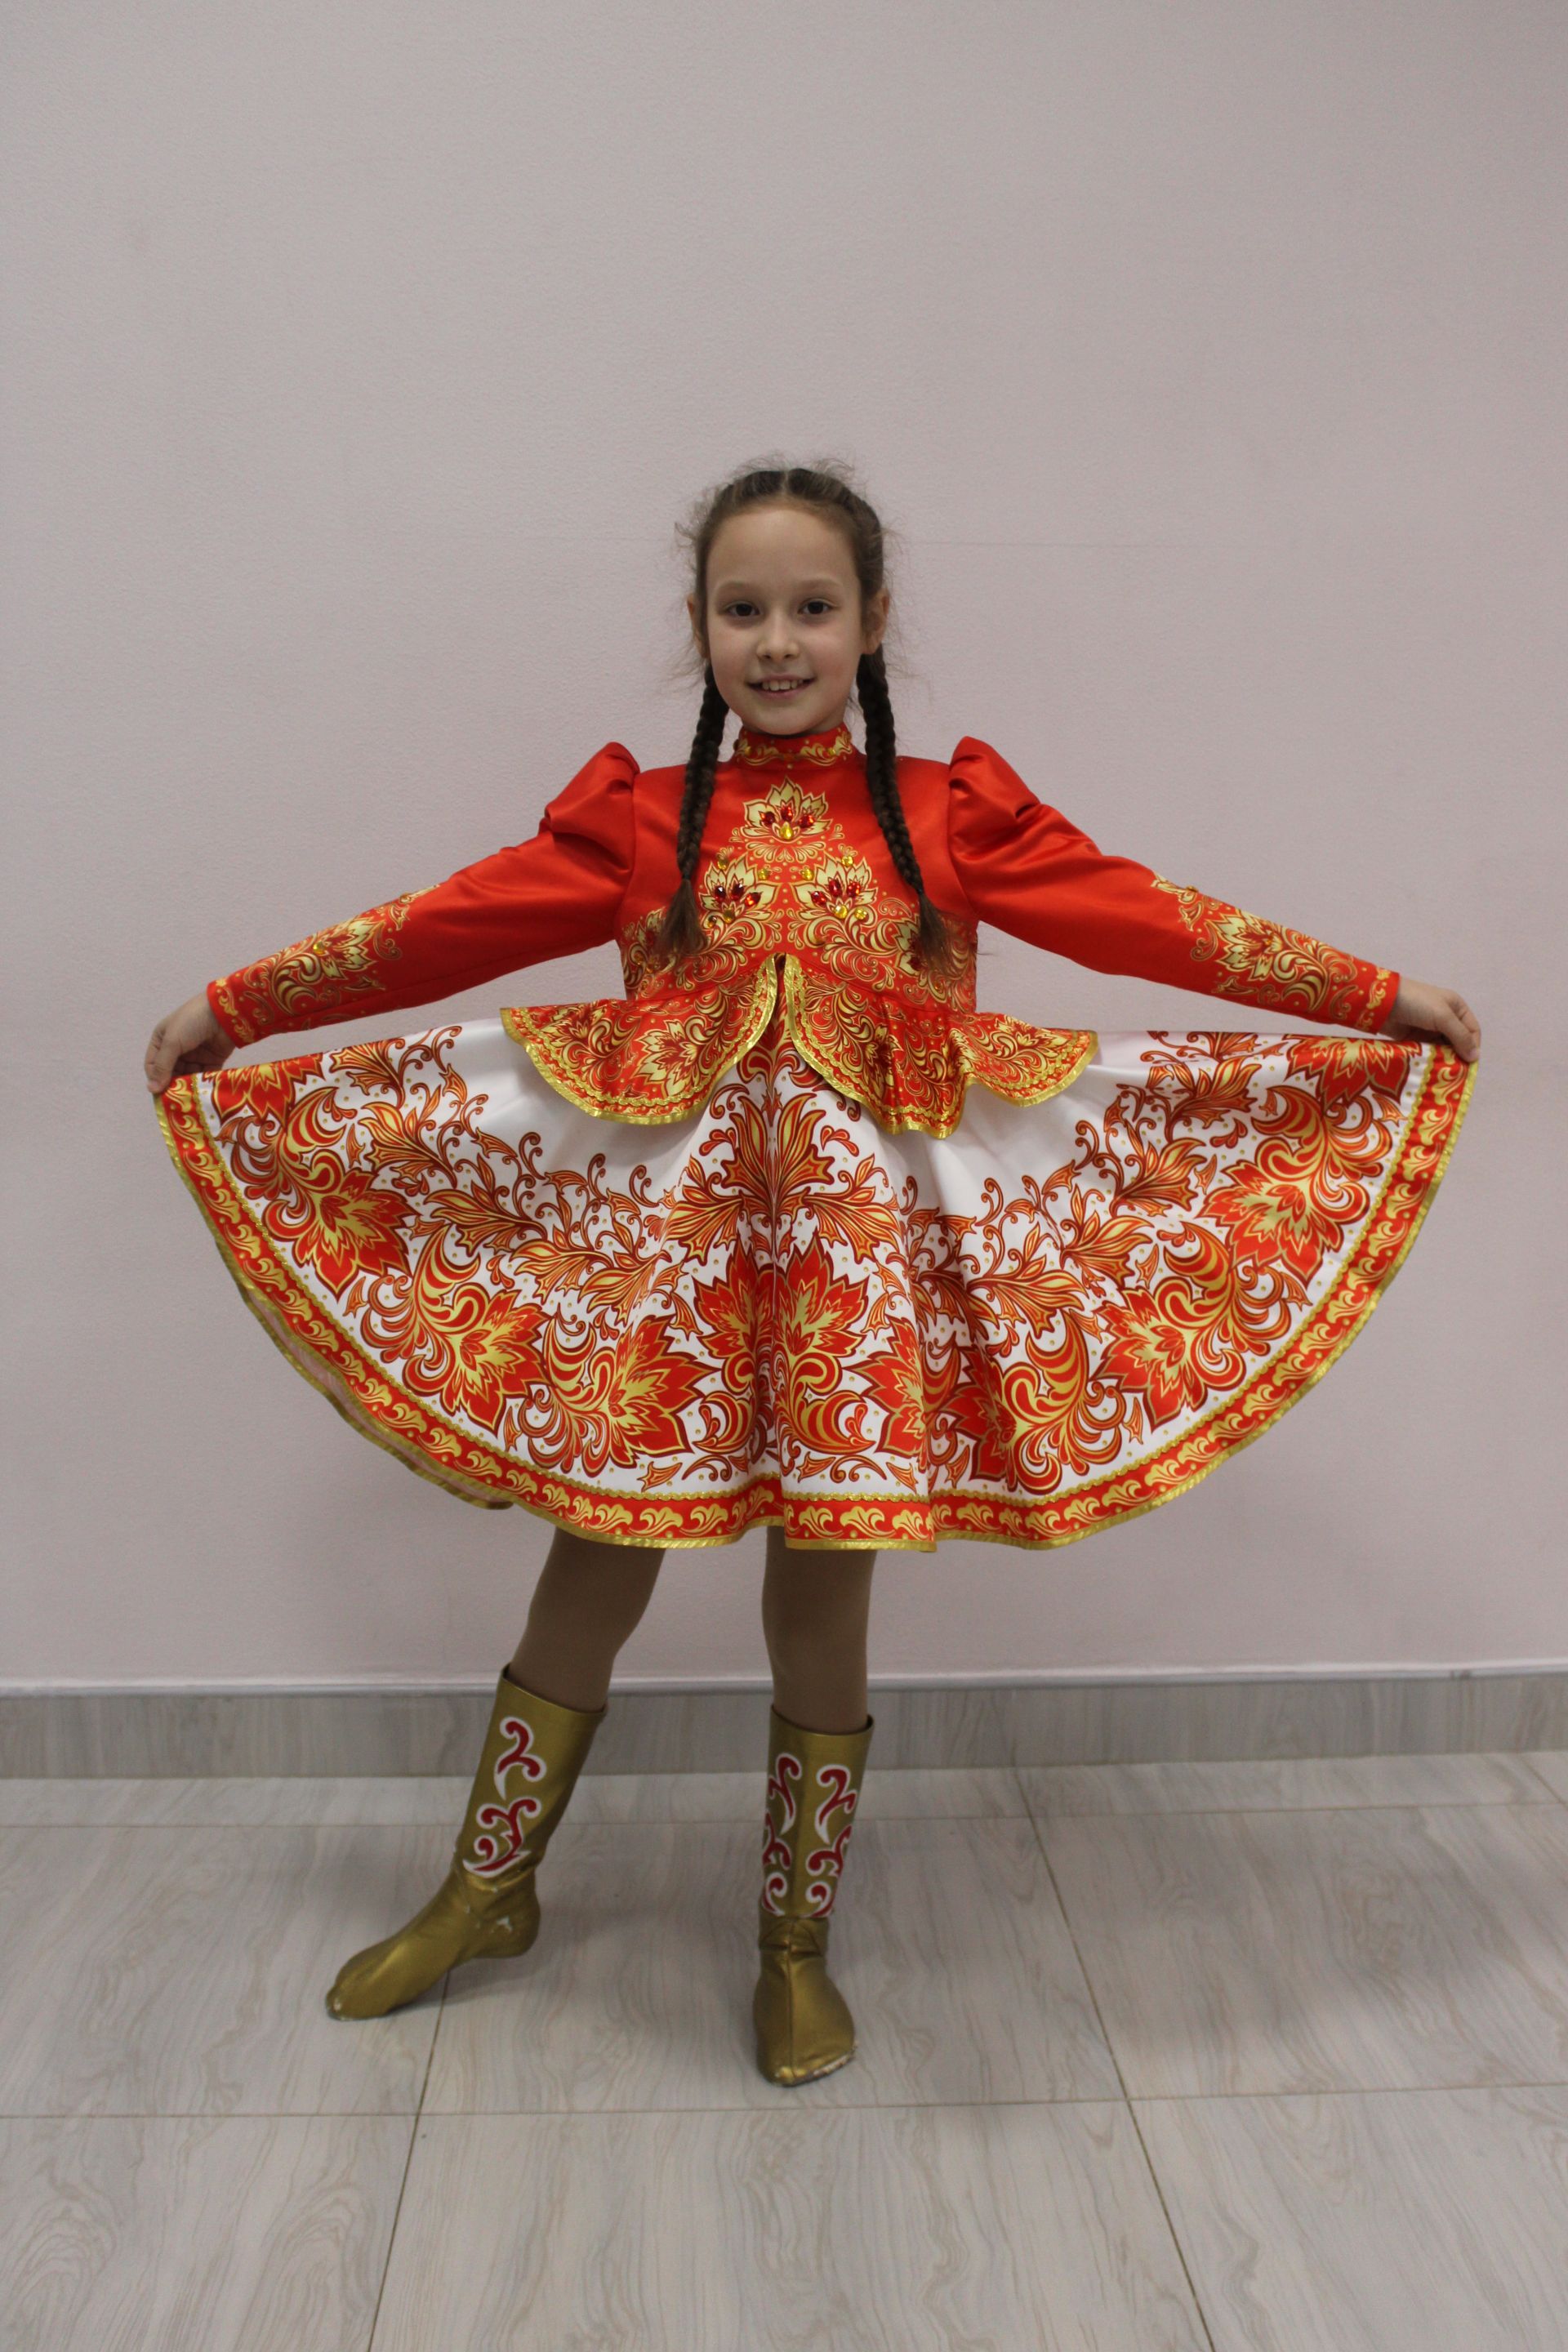 Заинцы отправятся на финал фестиваля «Созвездие-Йолдызлык» в Казань